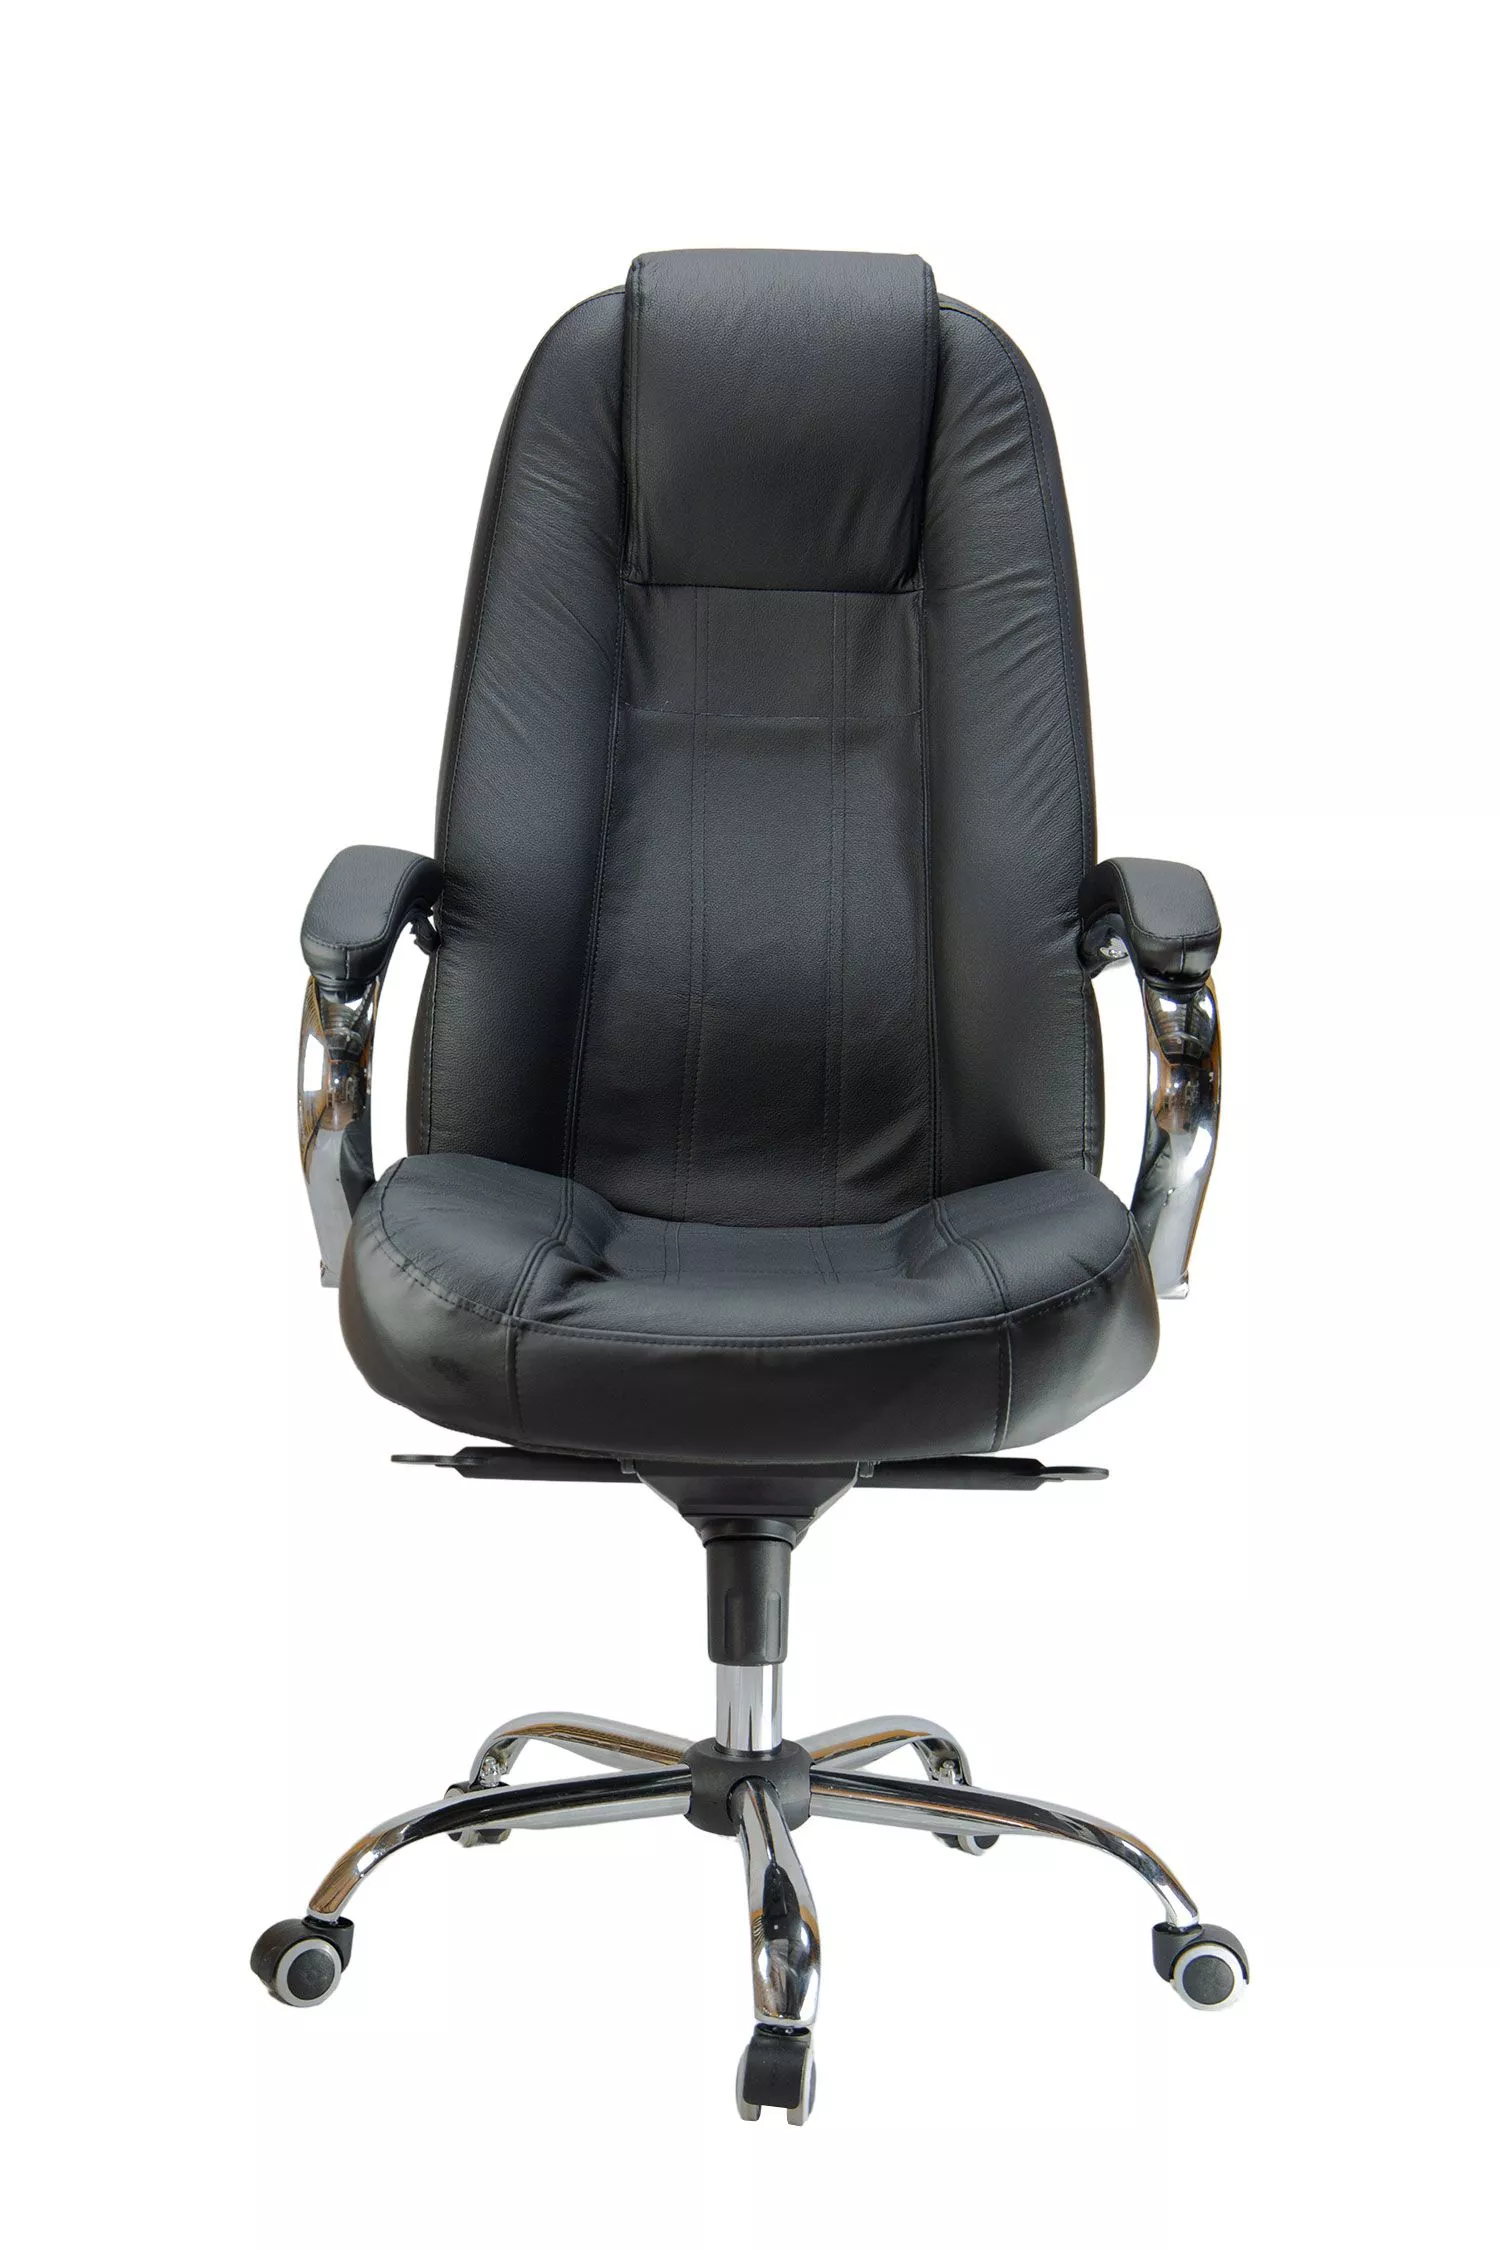 Кресло для персонала Riva Chair RUSSIA 1110 L черный